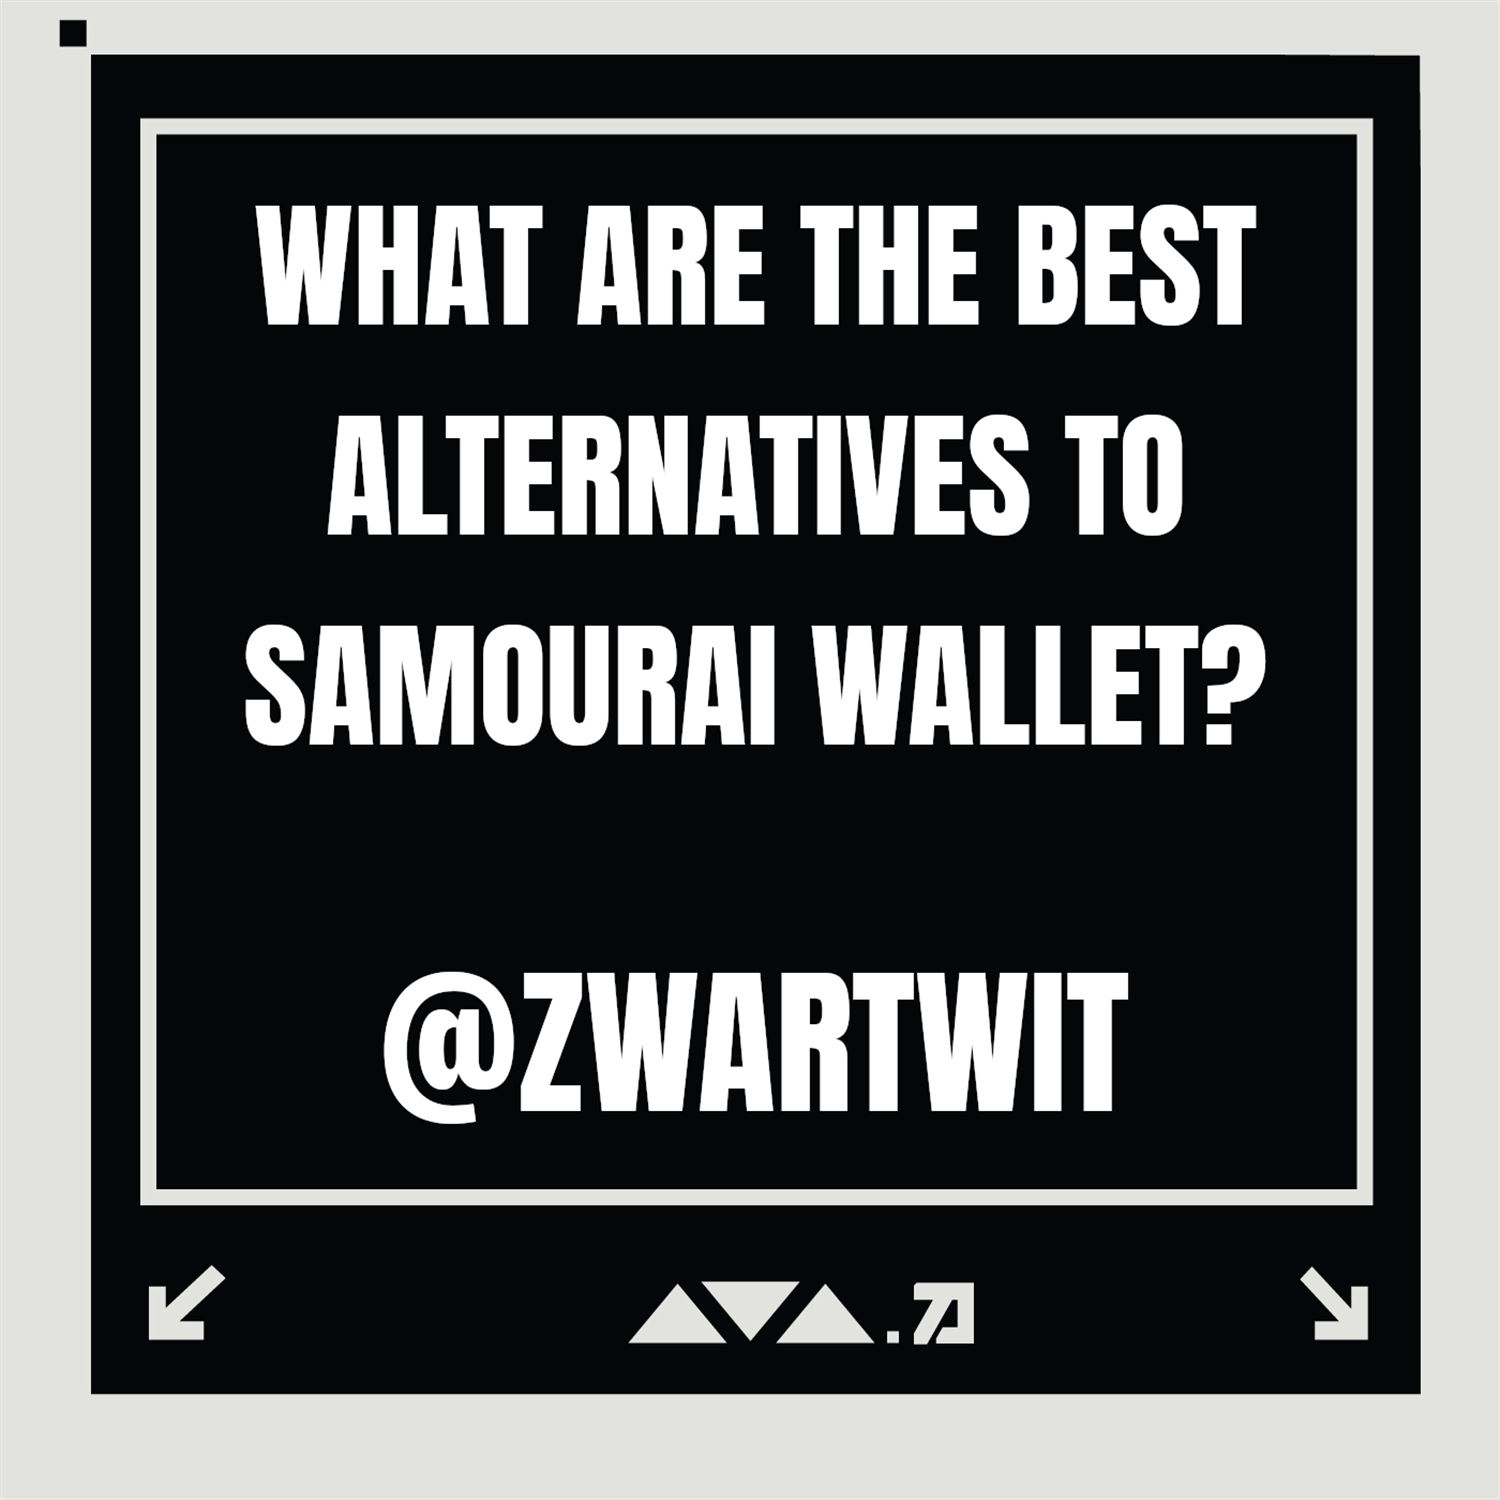 Q1: Samourai Alternatives